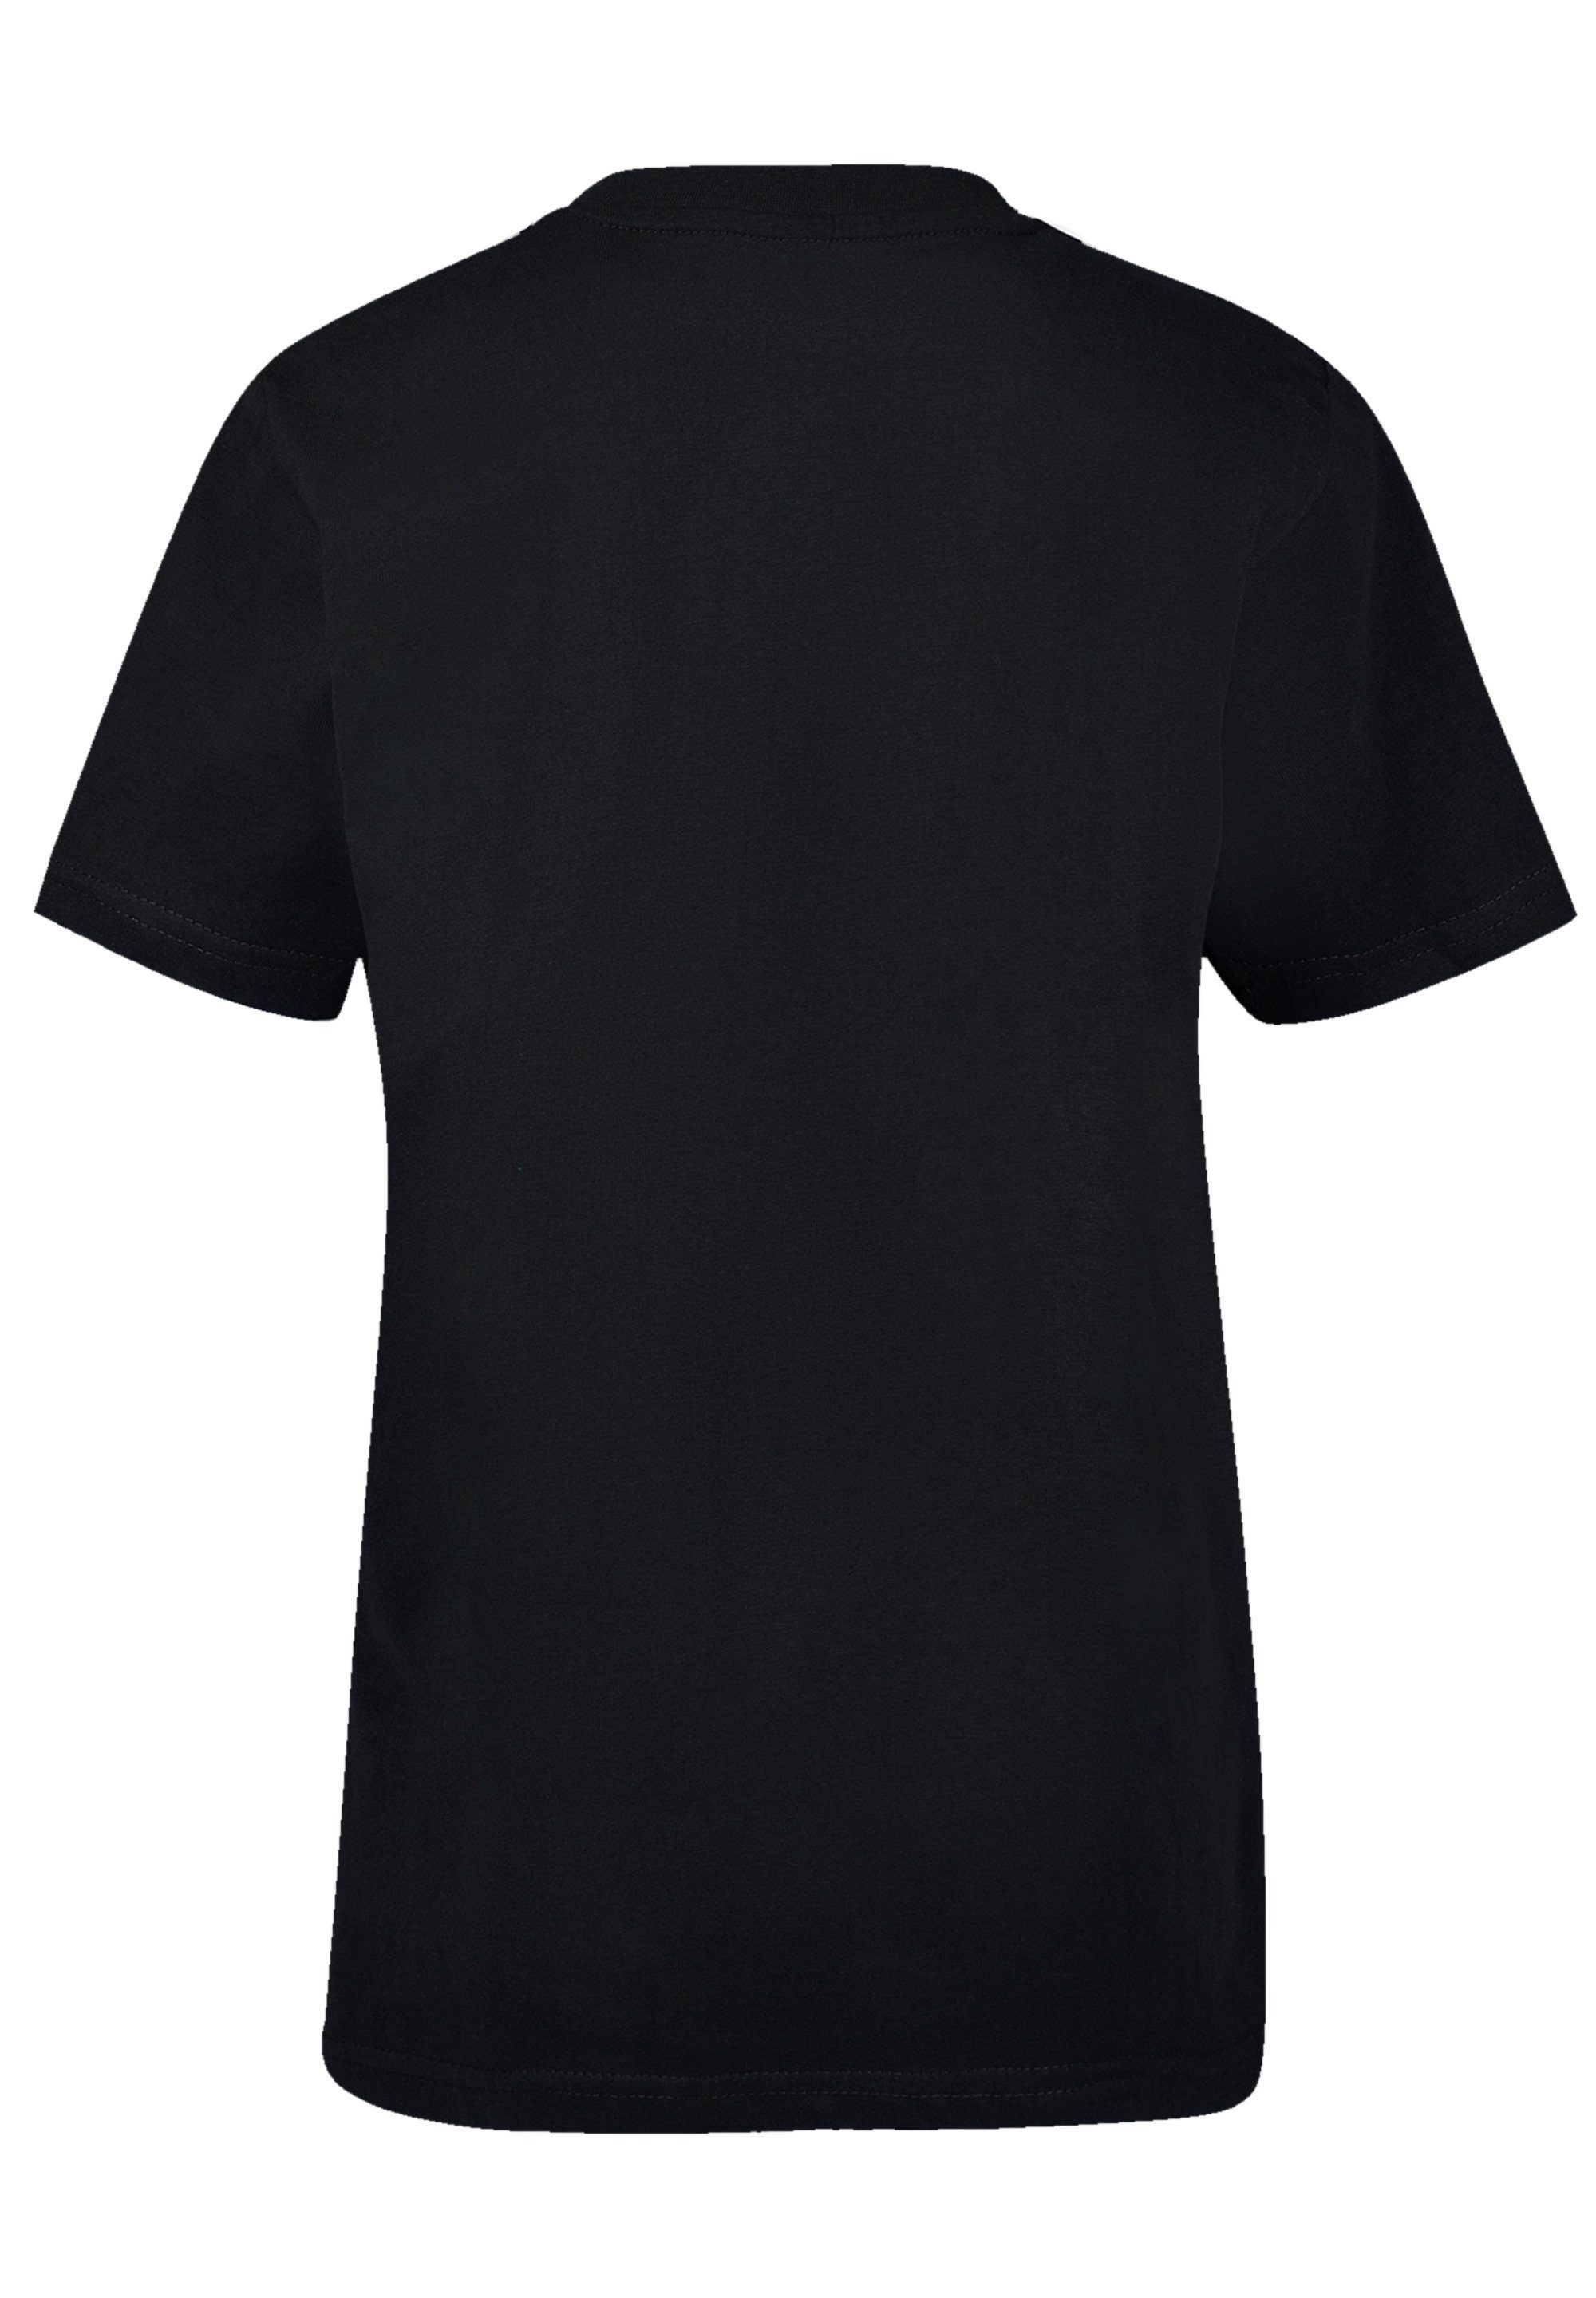 F4NT4STIC T-Shirt Trick Or Baumwollstoff weicher mit Sehr Halloween hohem Print, Treat Tragekomfort